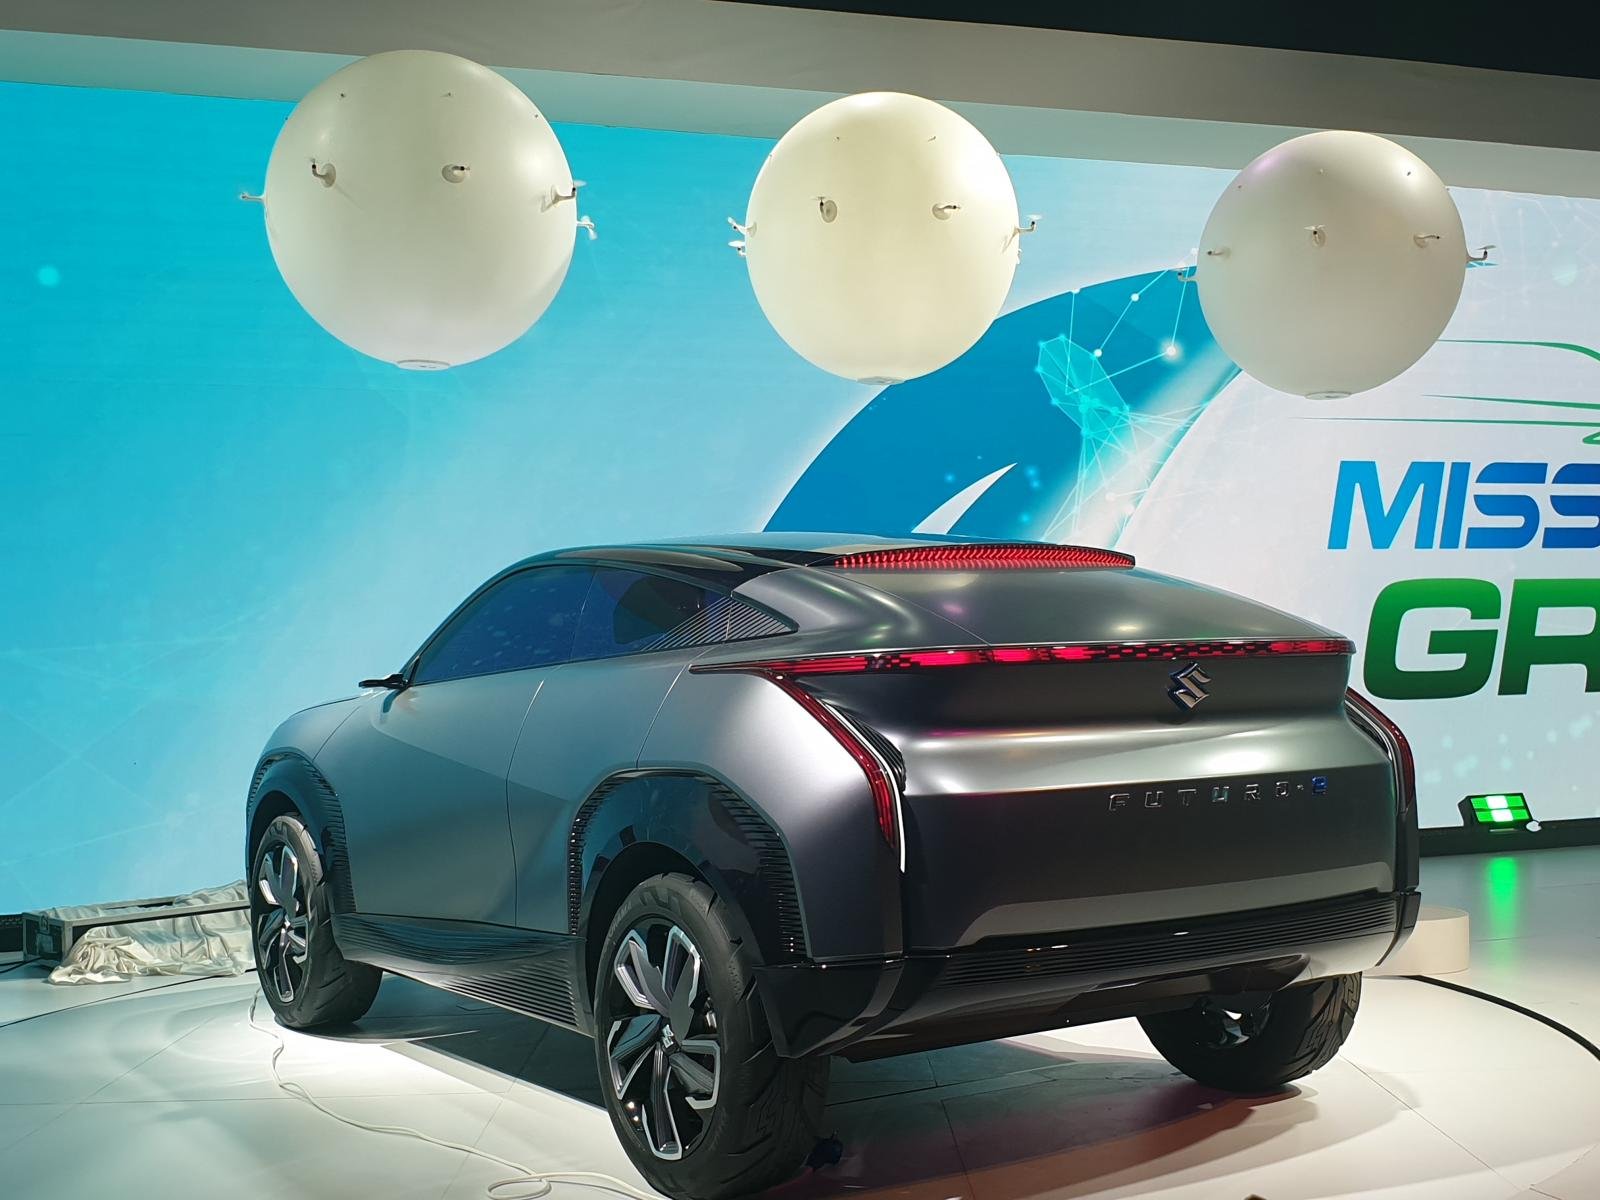 Maruti Futuro E concept unveiled at Auto Expo 2020